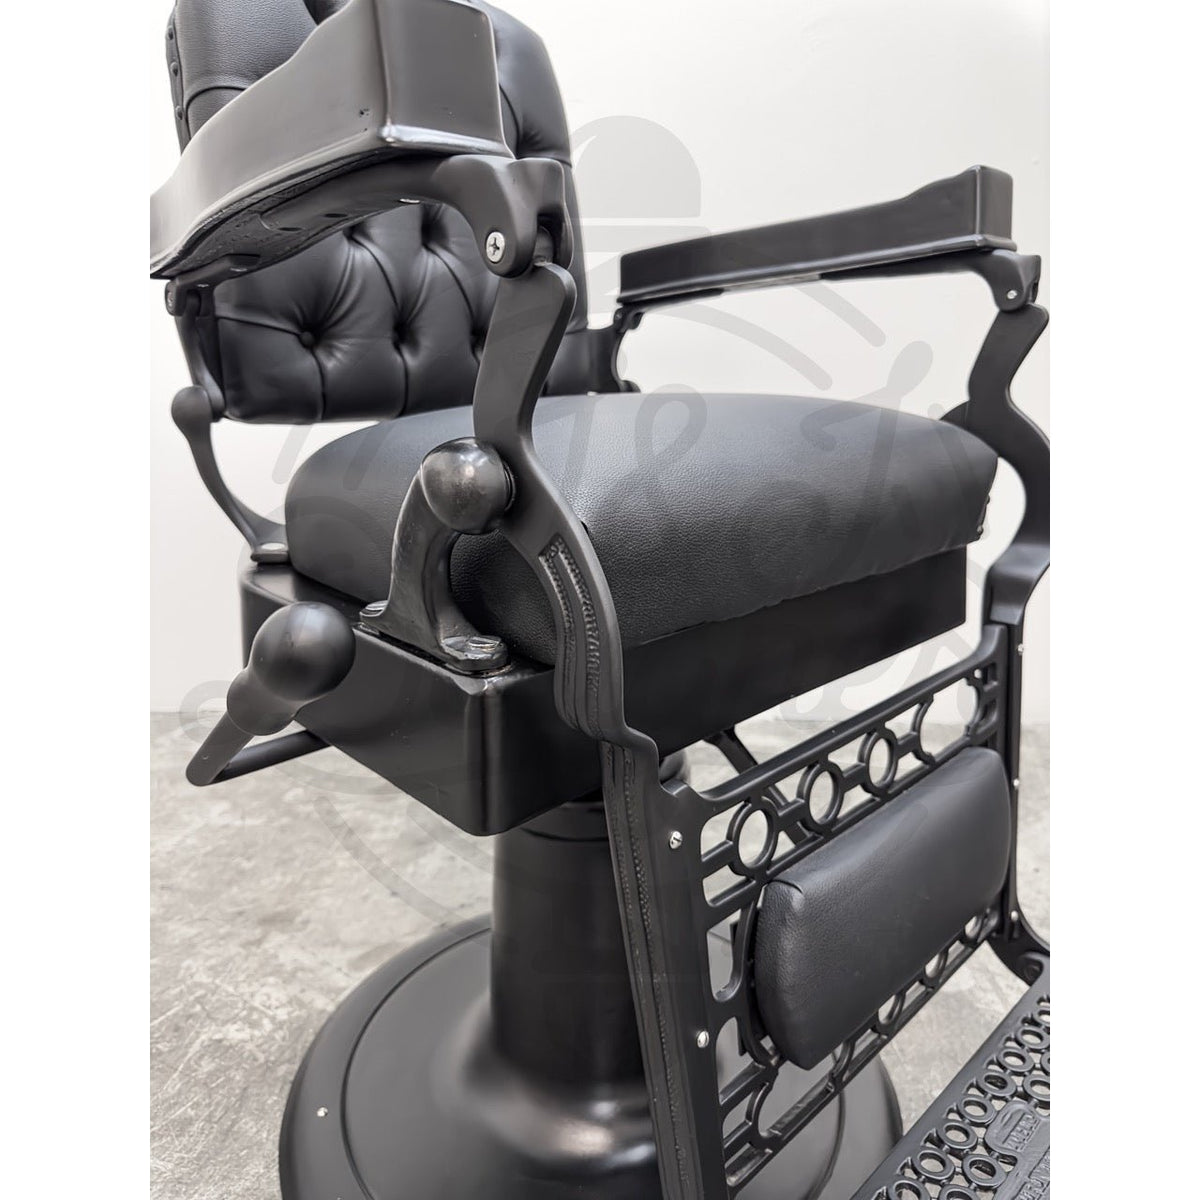 Vintage Berninghaus Hercules Barber Chair - Black on Black